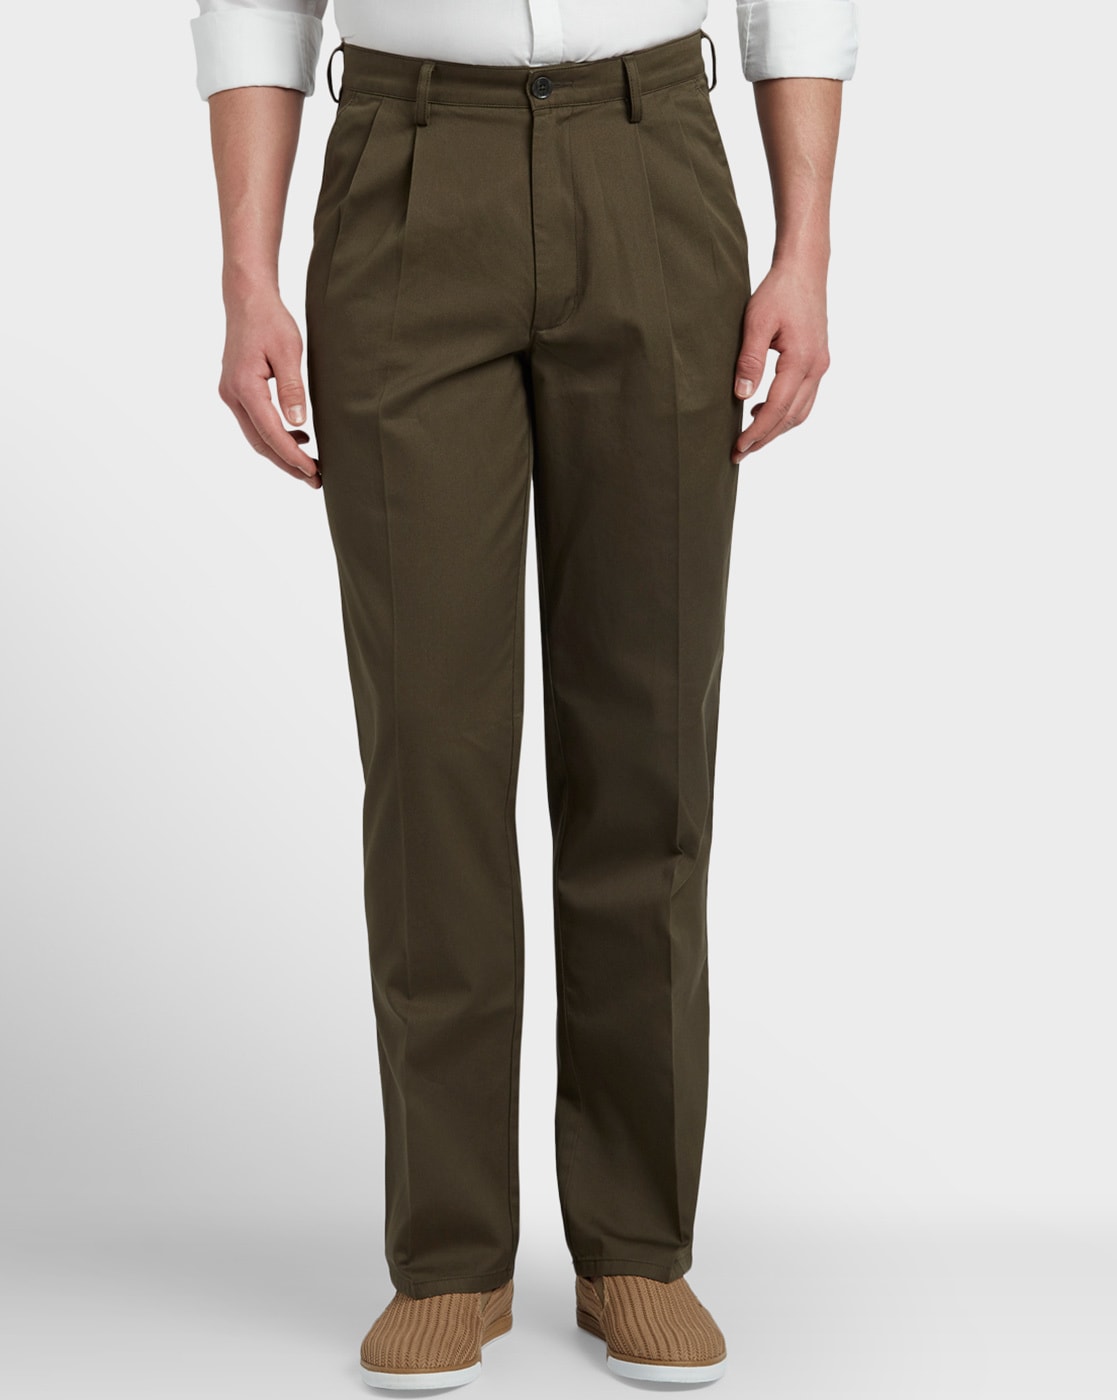 Buy Khaki Trousers & Pants for Men by Colorplus Online | Ajio.com